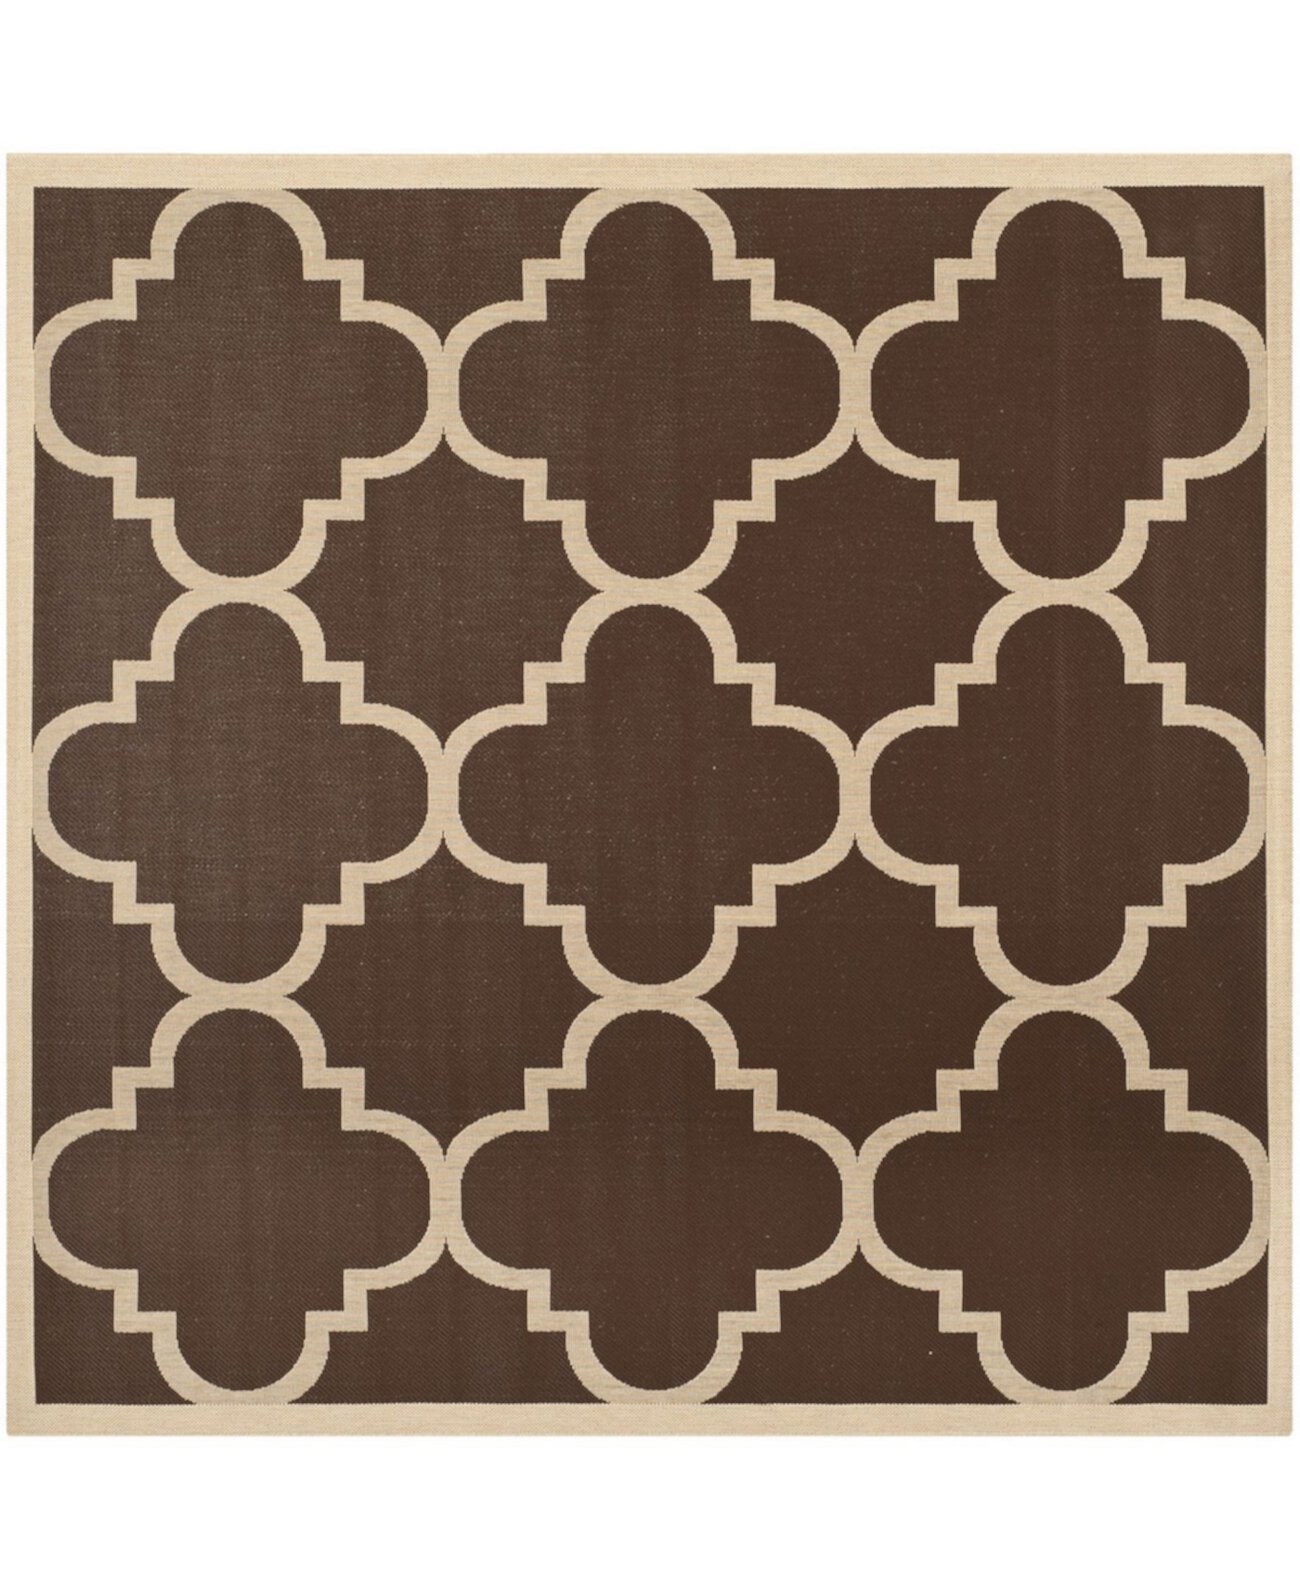 Courtyard CY6243 Темно-коричневый квадратный коврик из сизальского переплетения размером 4 x 4 дюйма для улицы Safavieh